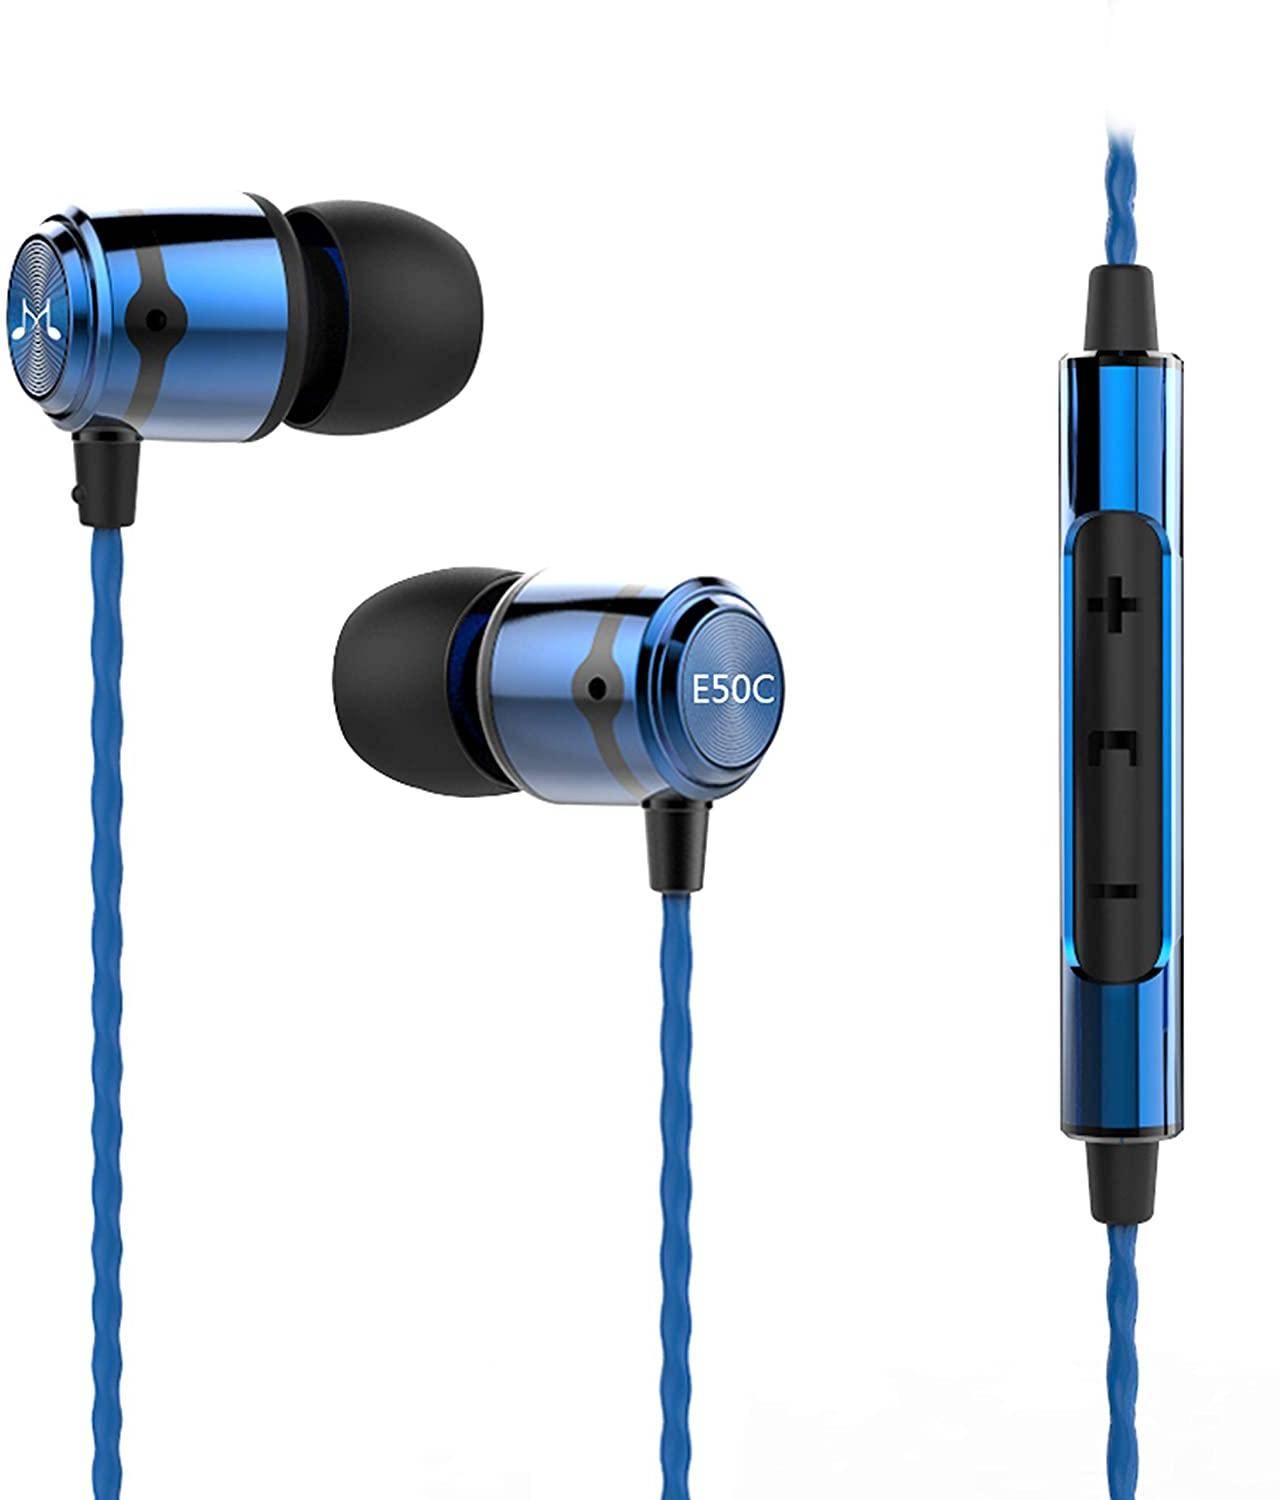 SoundMagic E50C Headphones With Mic zoom image